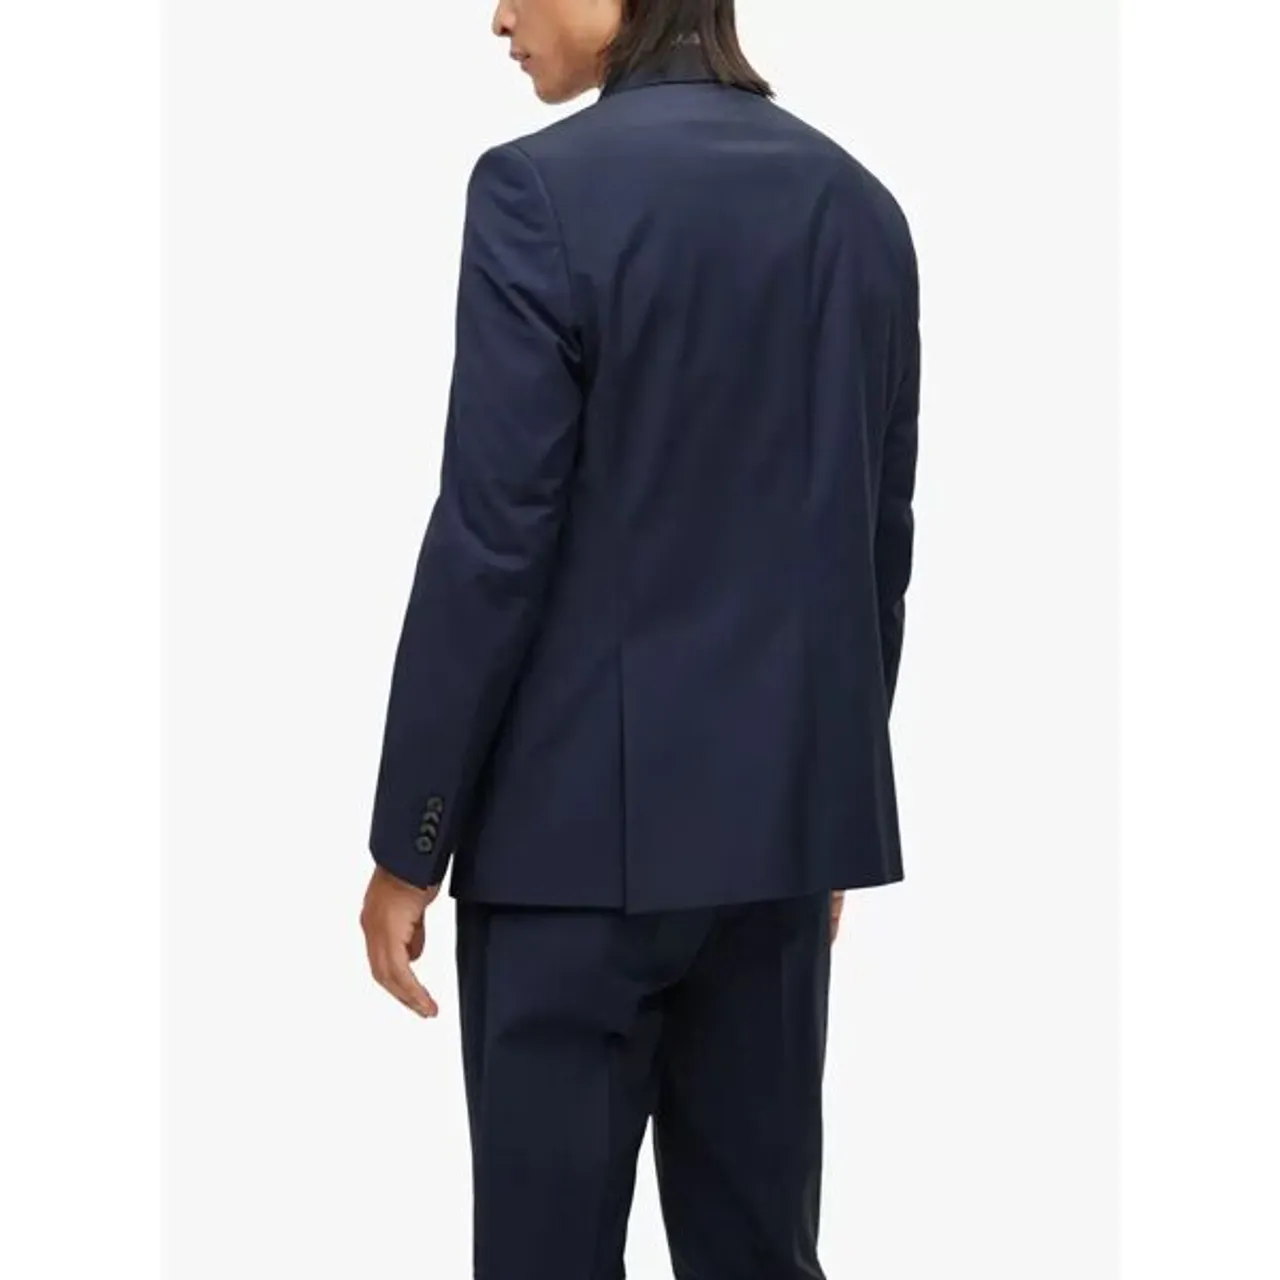 Hugo Boss BOSS Jasper Wool Blend Suit Jacket - Dark Blue - Male